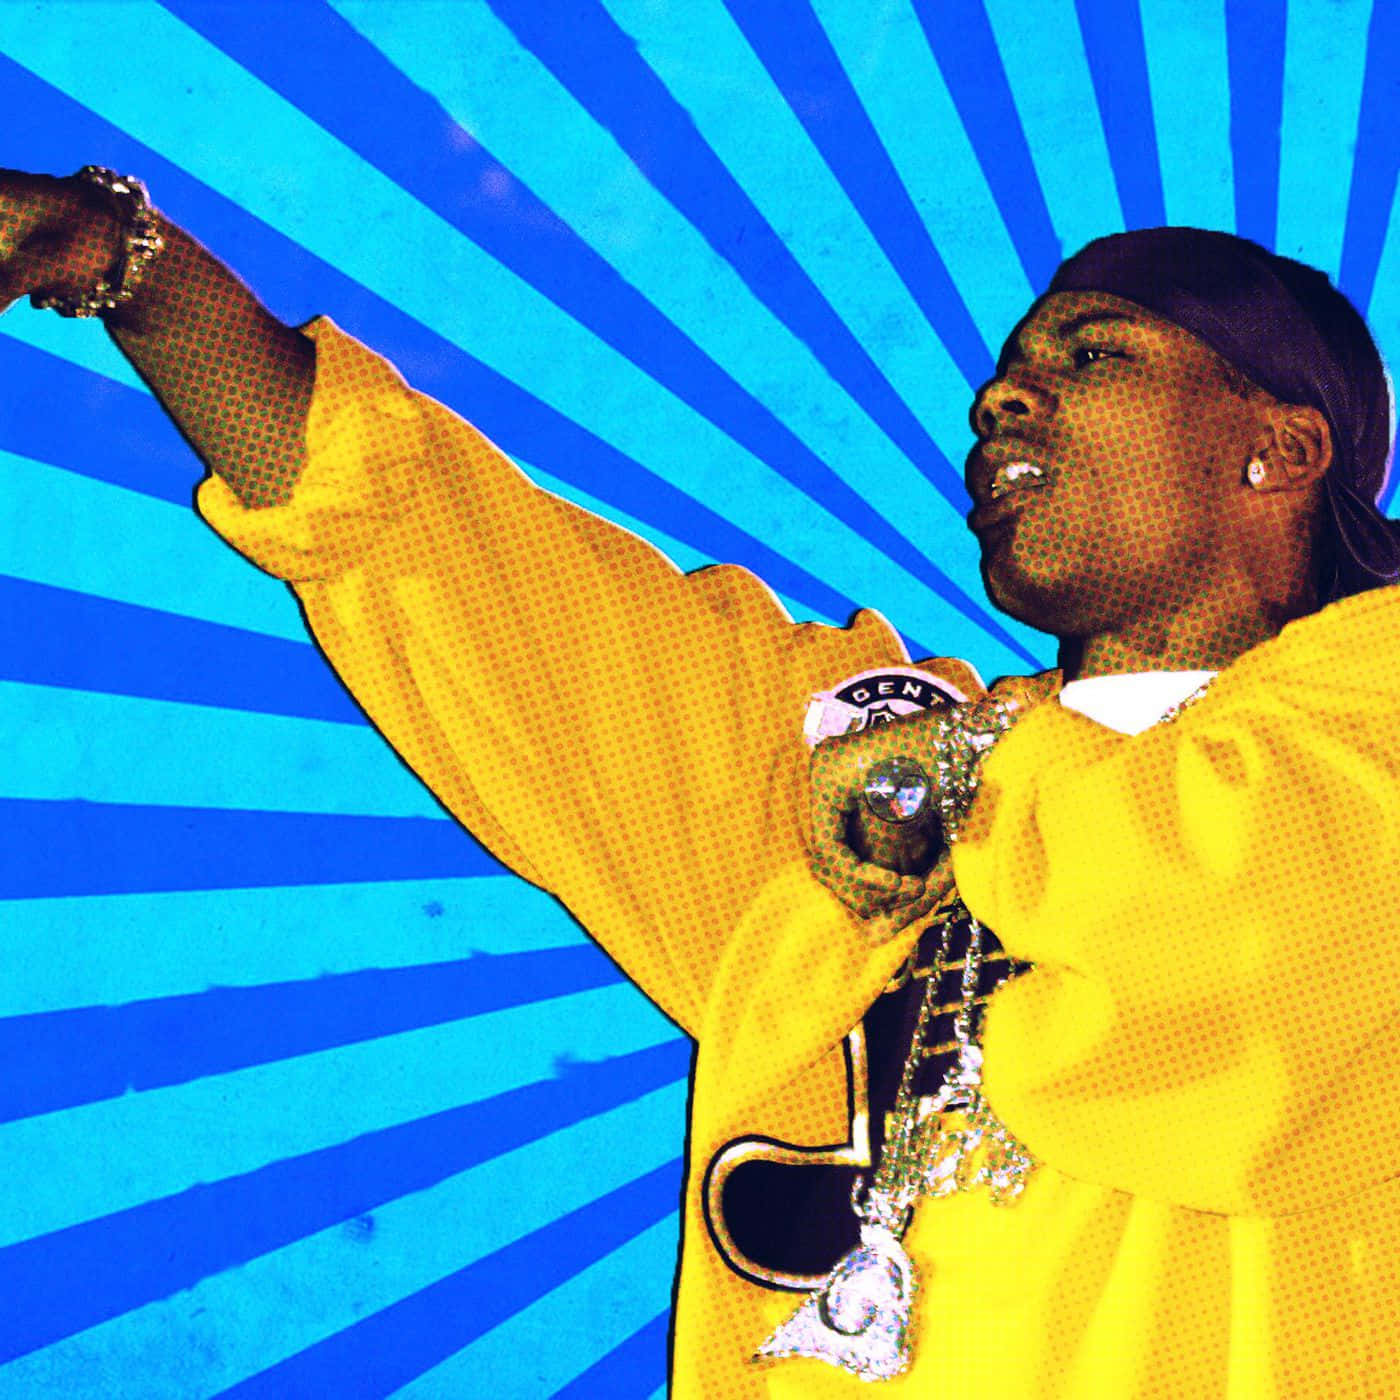 Nellyhält Ein Mikrofon Während Eines Konzerts Auf Blauem Abstraktem Hintergrund. Wallpaper